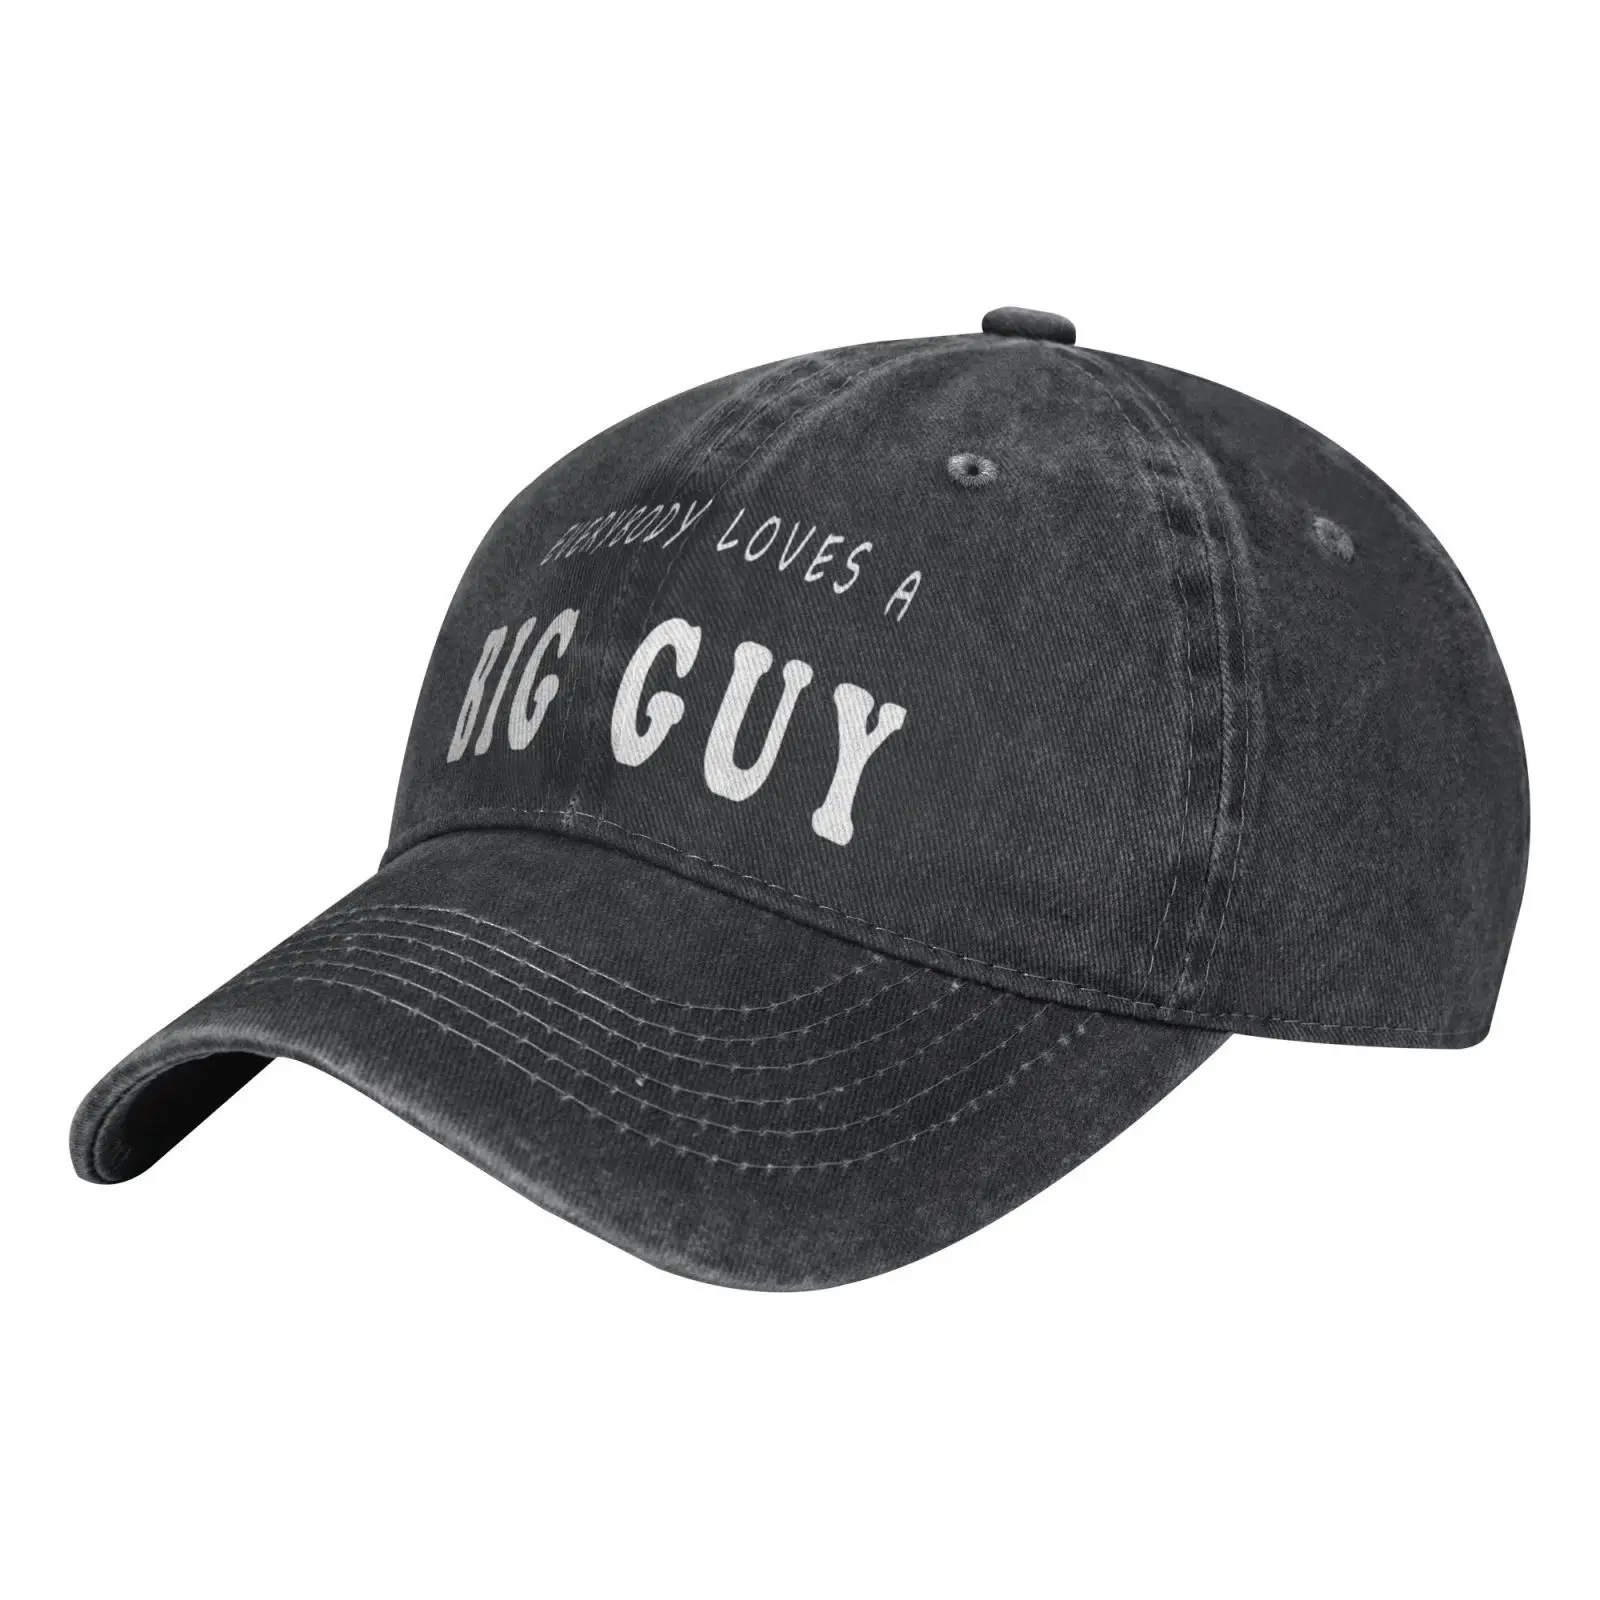 

Big Guy Graphic Apparel Men's Cap Men's Winter Hat Men's Caps Men's Panama Hat Hat Male Beach Men's Berets Cowgirl Trucker Cap